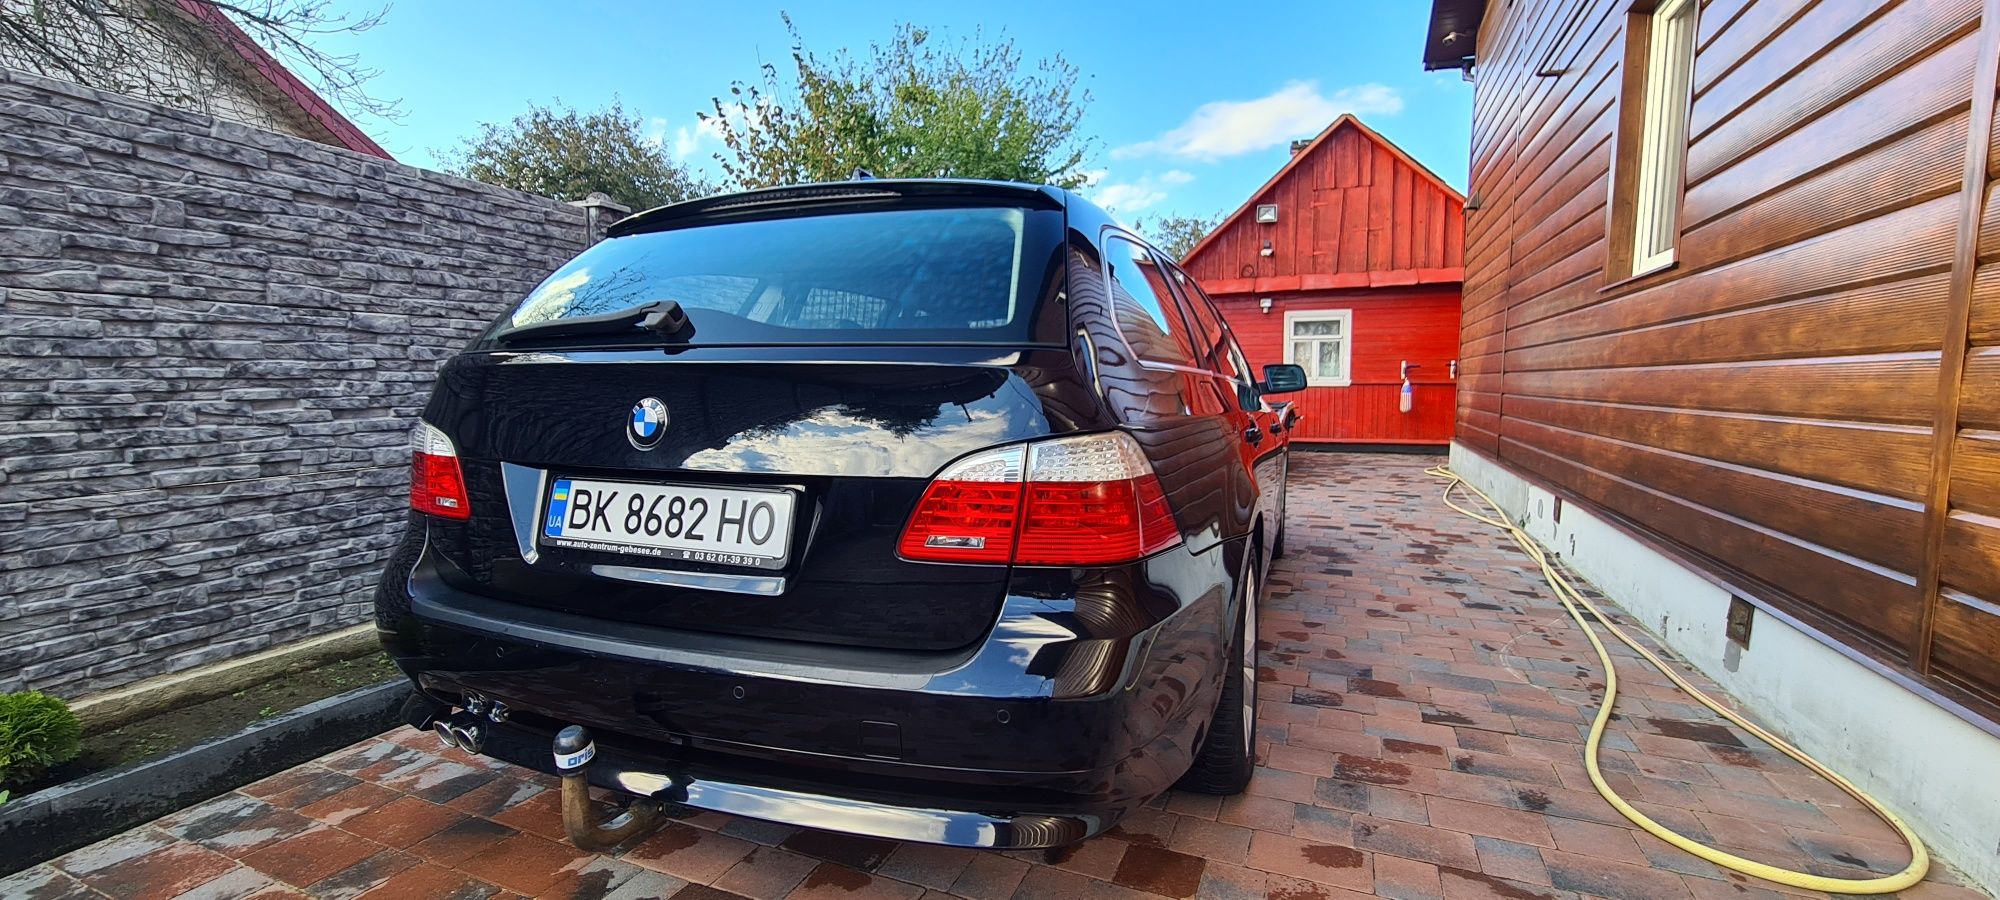 Продам BMW E 61 пригнану з Німеччини в ідеальному стані , обслужену